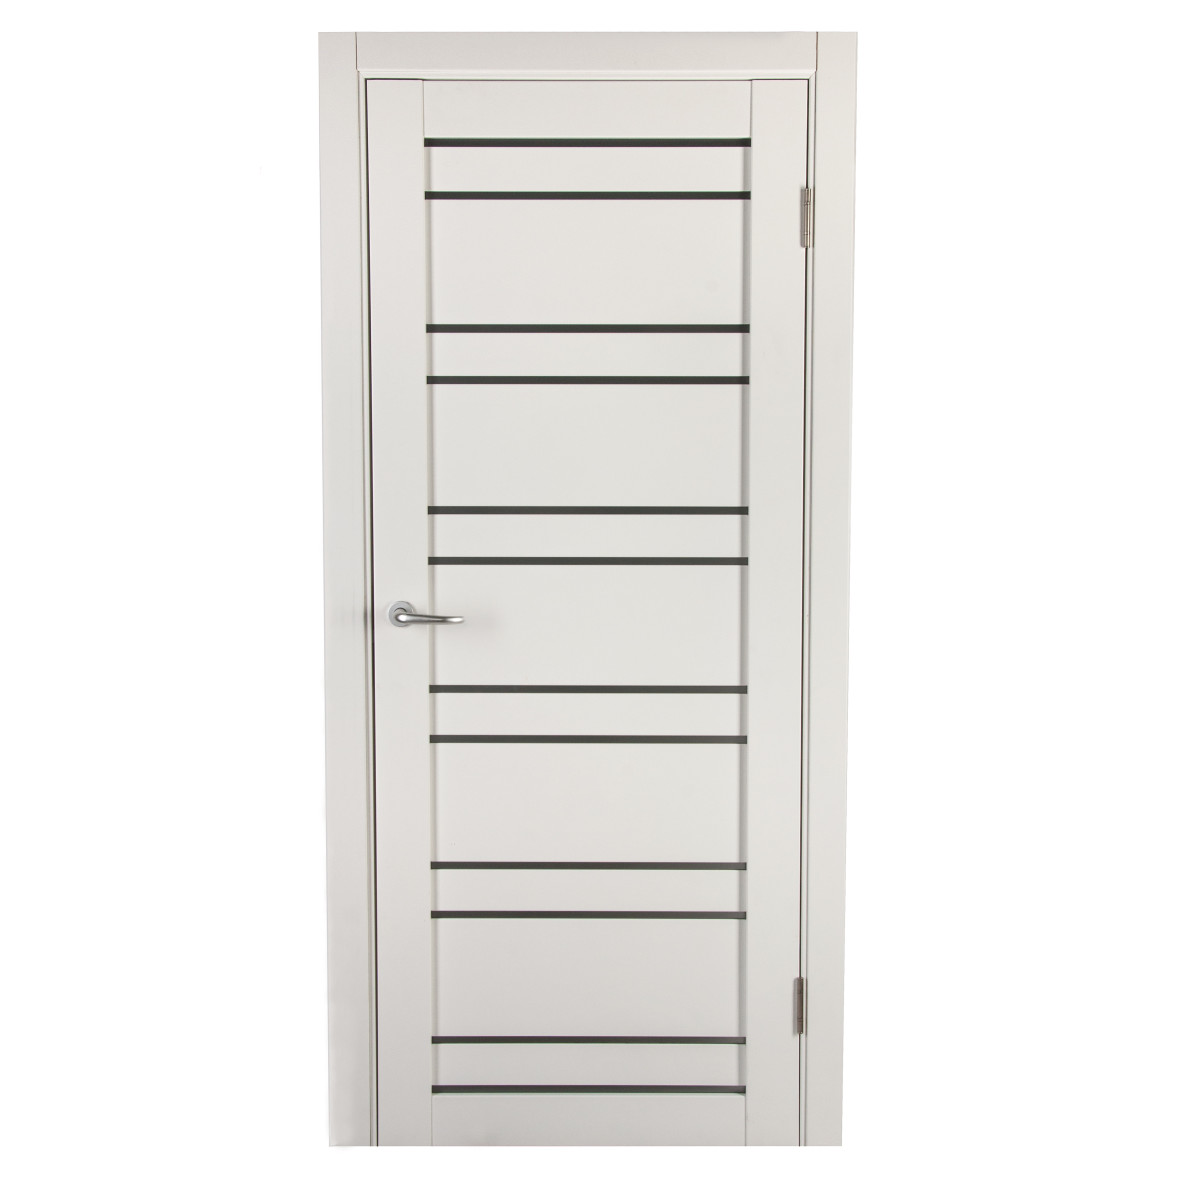 Дверь межкомнатная остеклённая с фурнитурой Парма 60х200 см, Hardflex, цвет белый